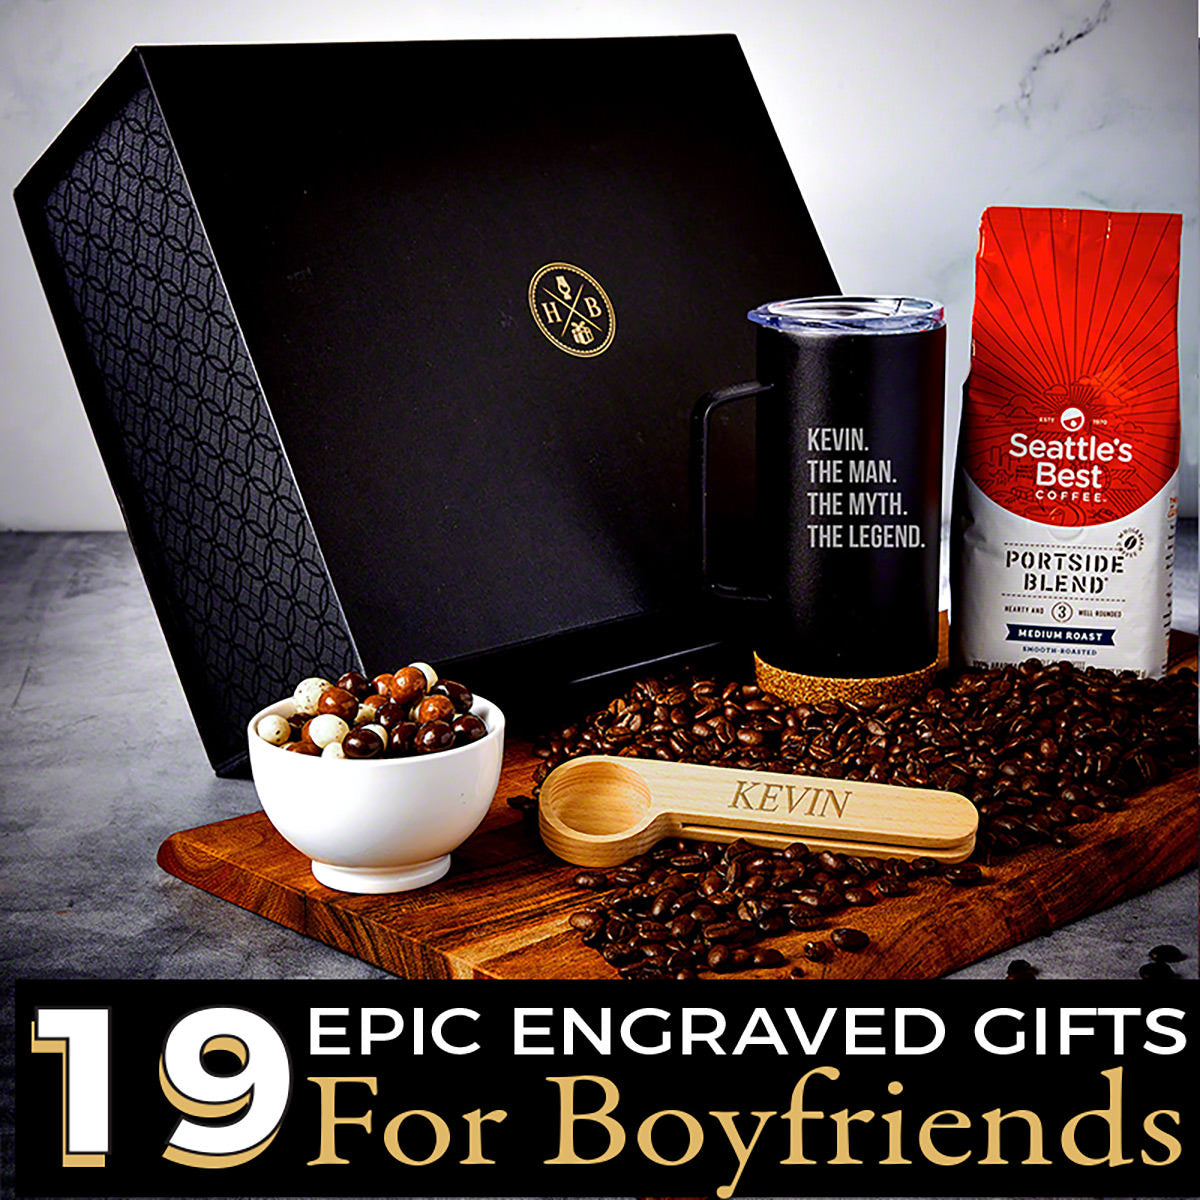 43 Boyfriend Gift Ideas That Kick Ass